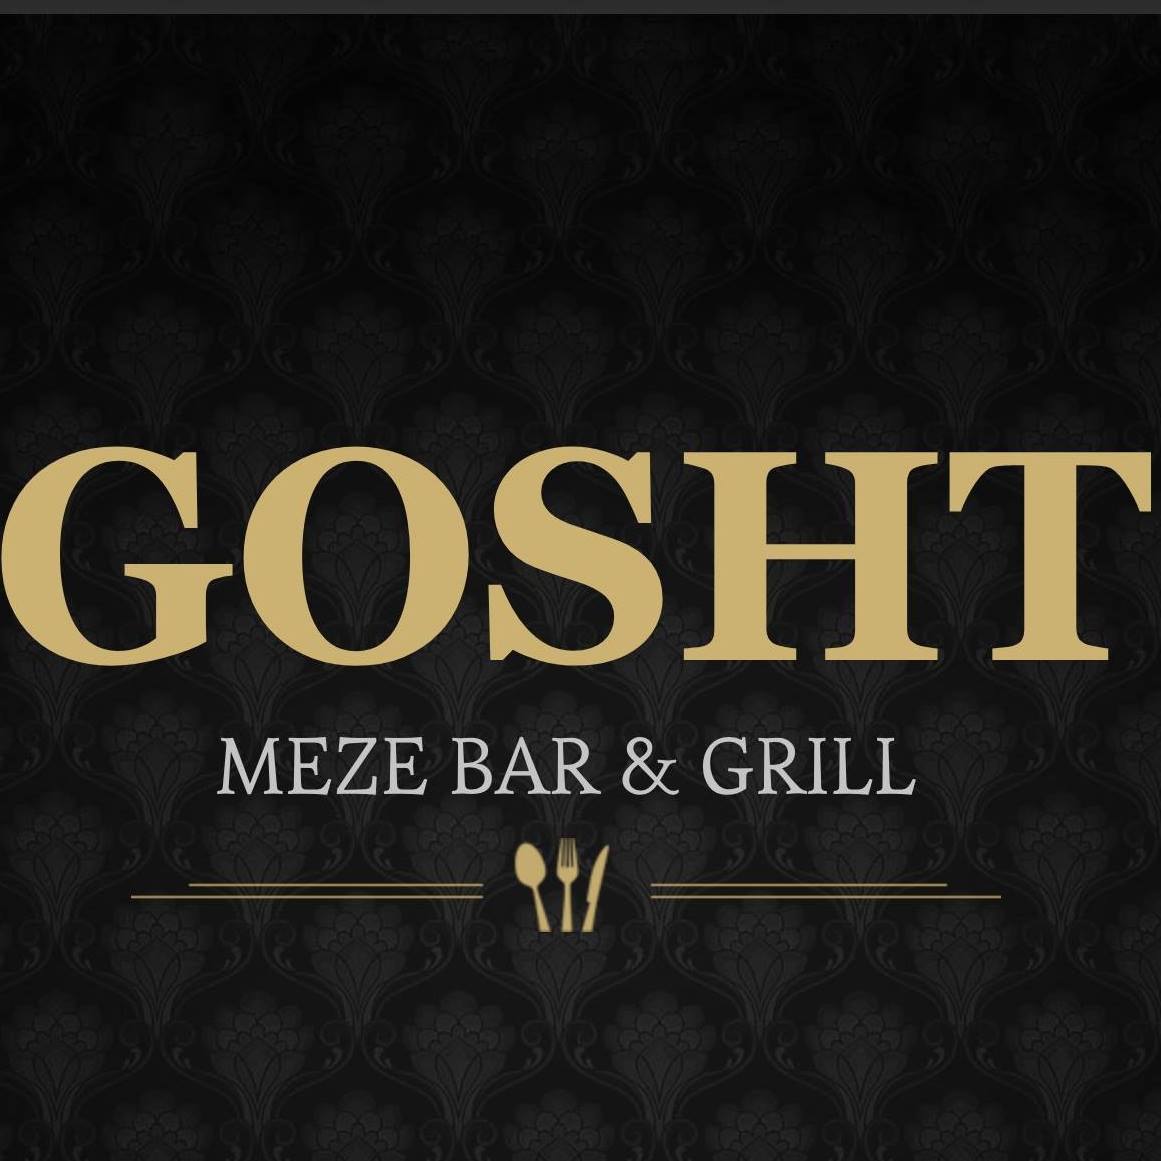 Gosht Restaurant